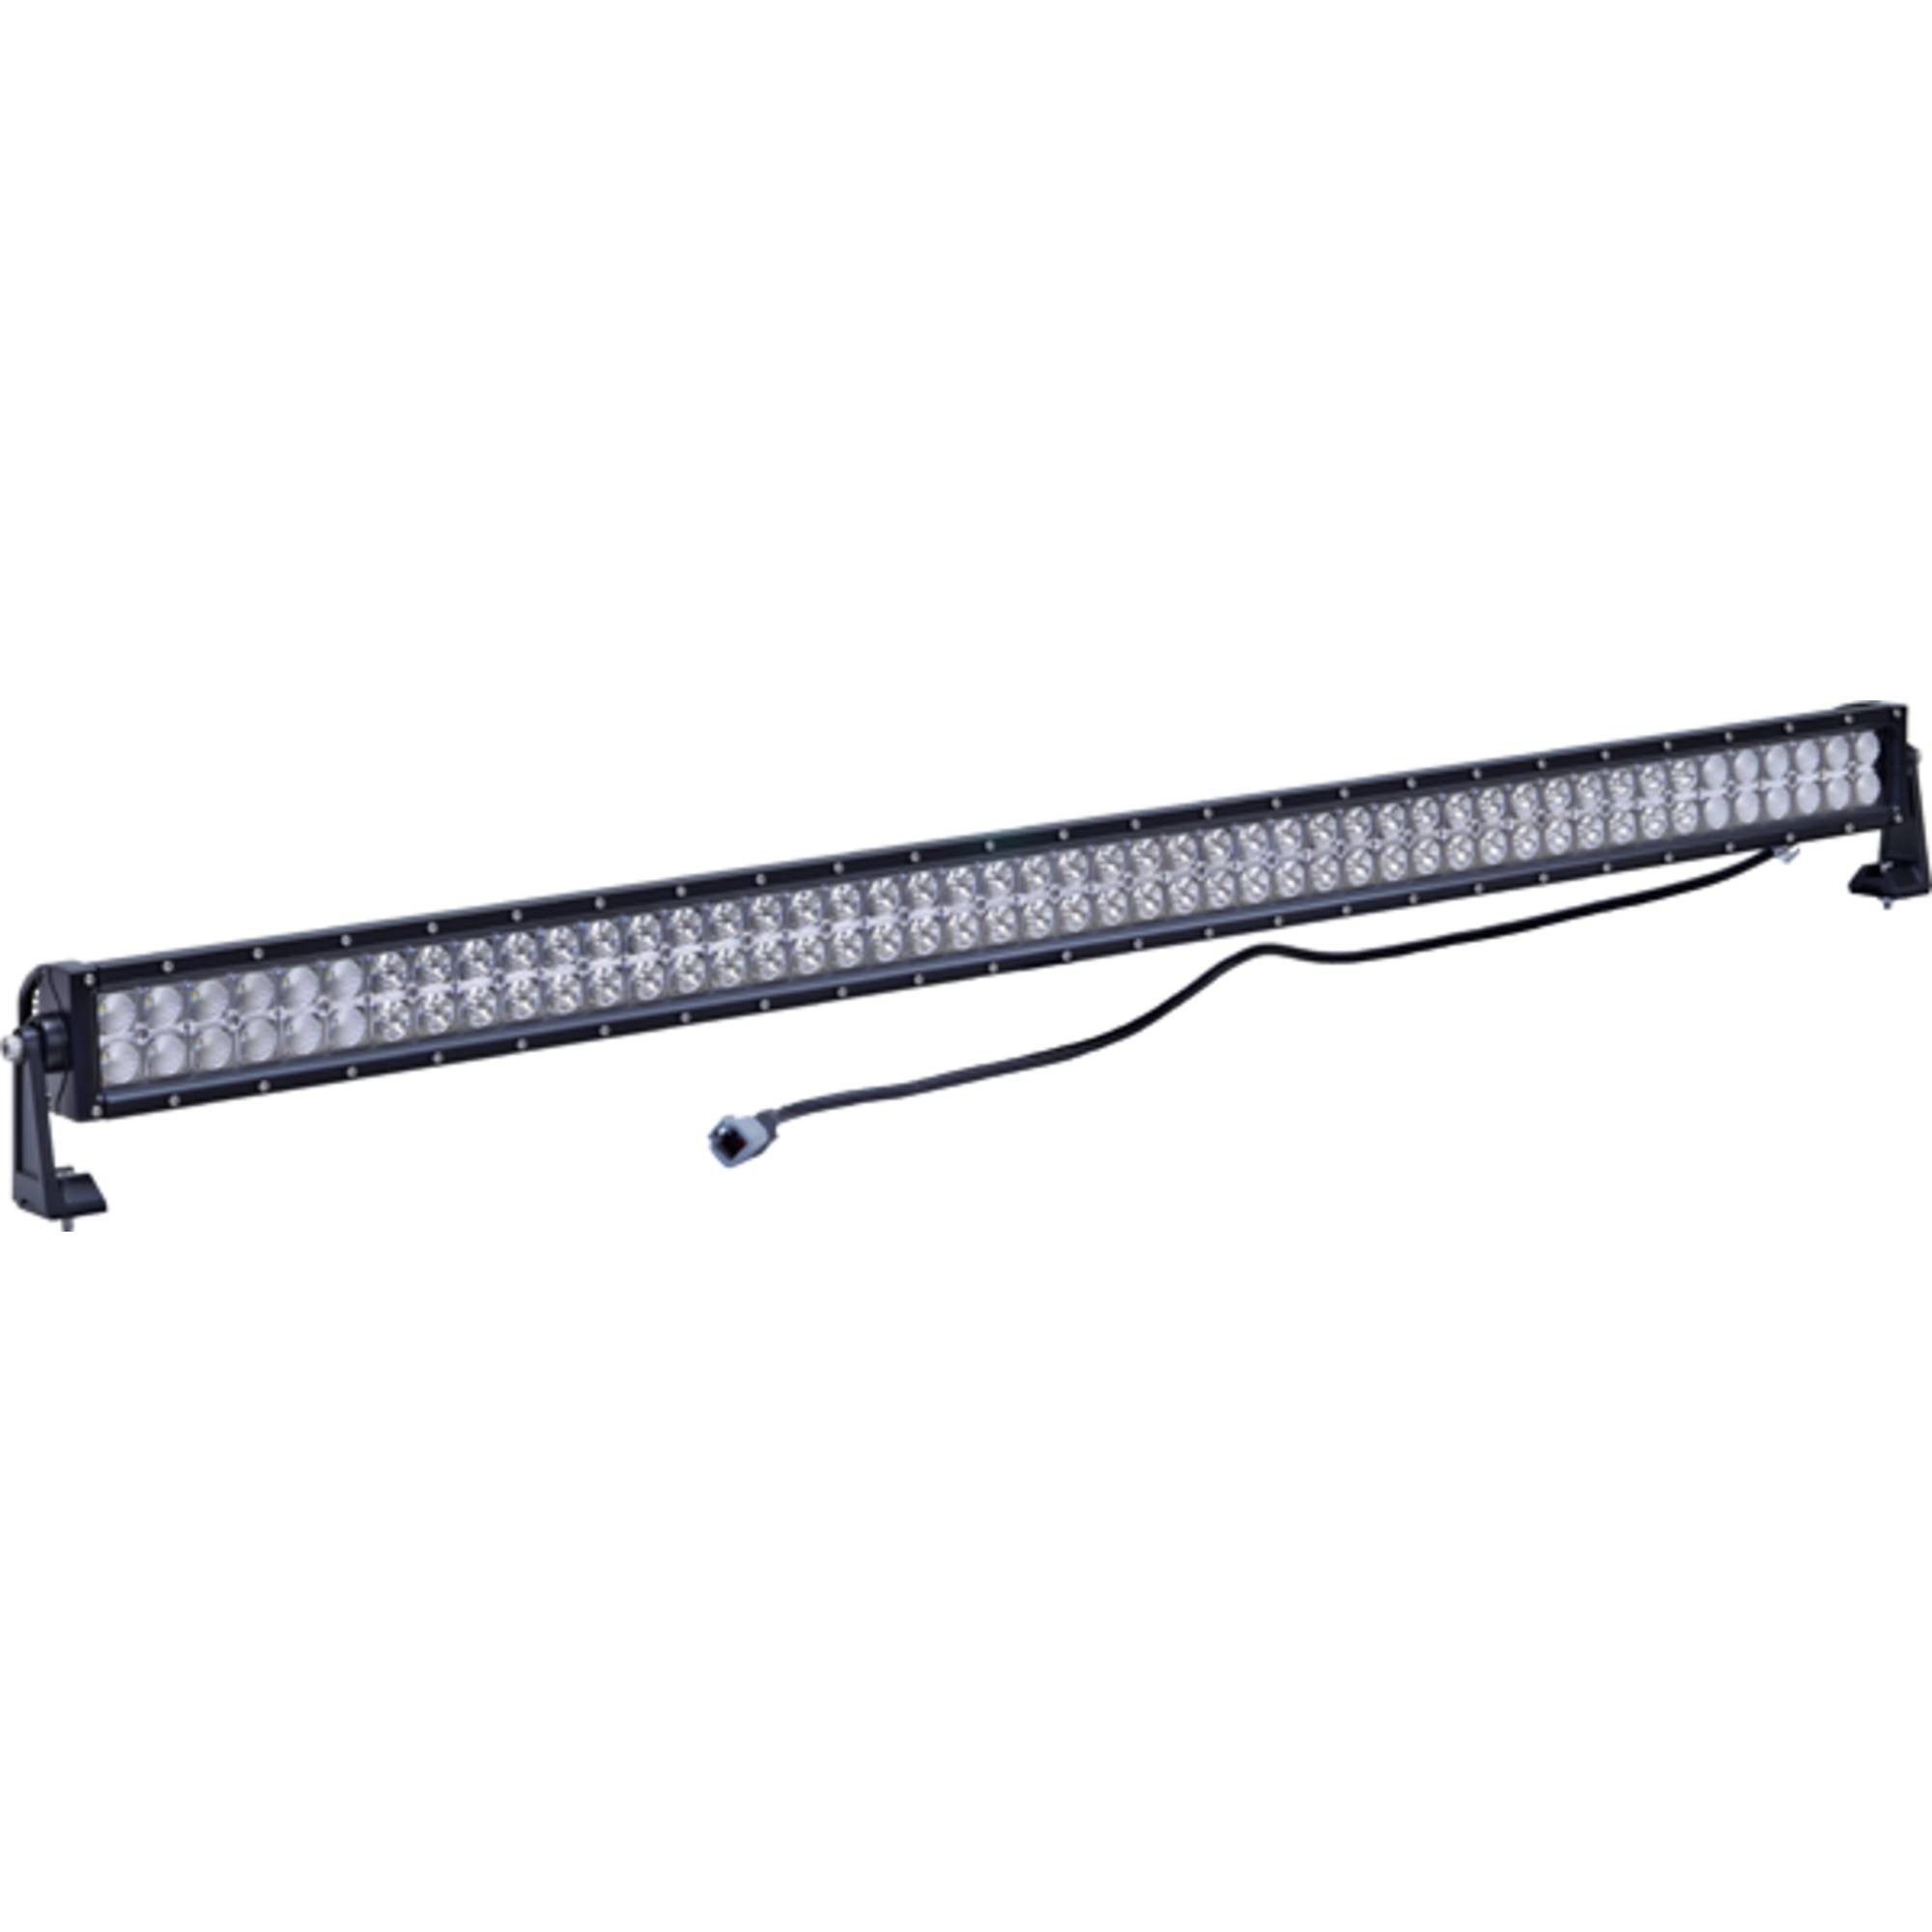 J&N Light Bar for 12/24V, 96 LED, 8000 Lumens, White, Black Housing; 550-12006